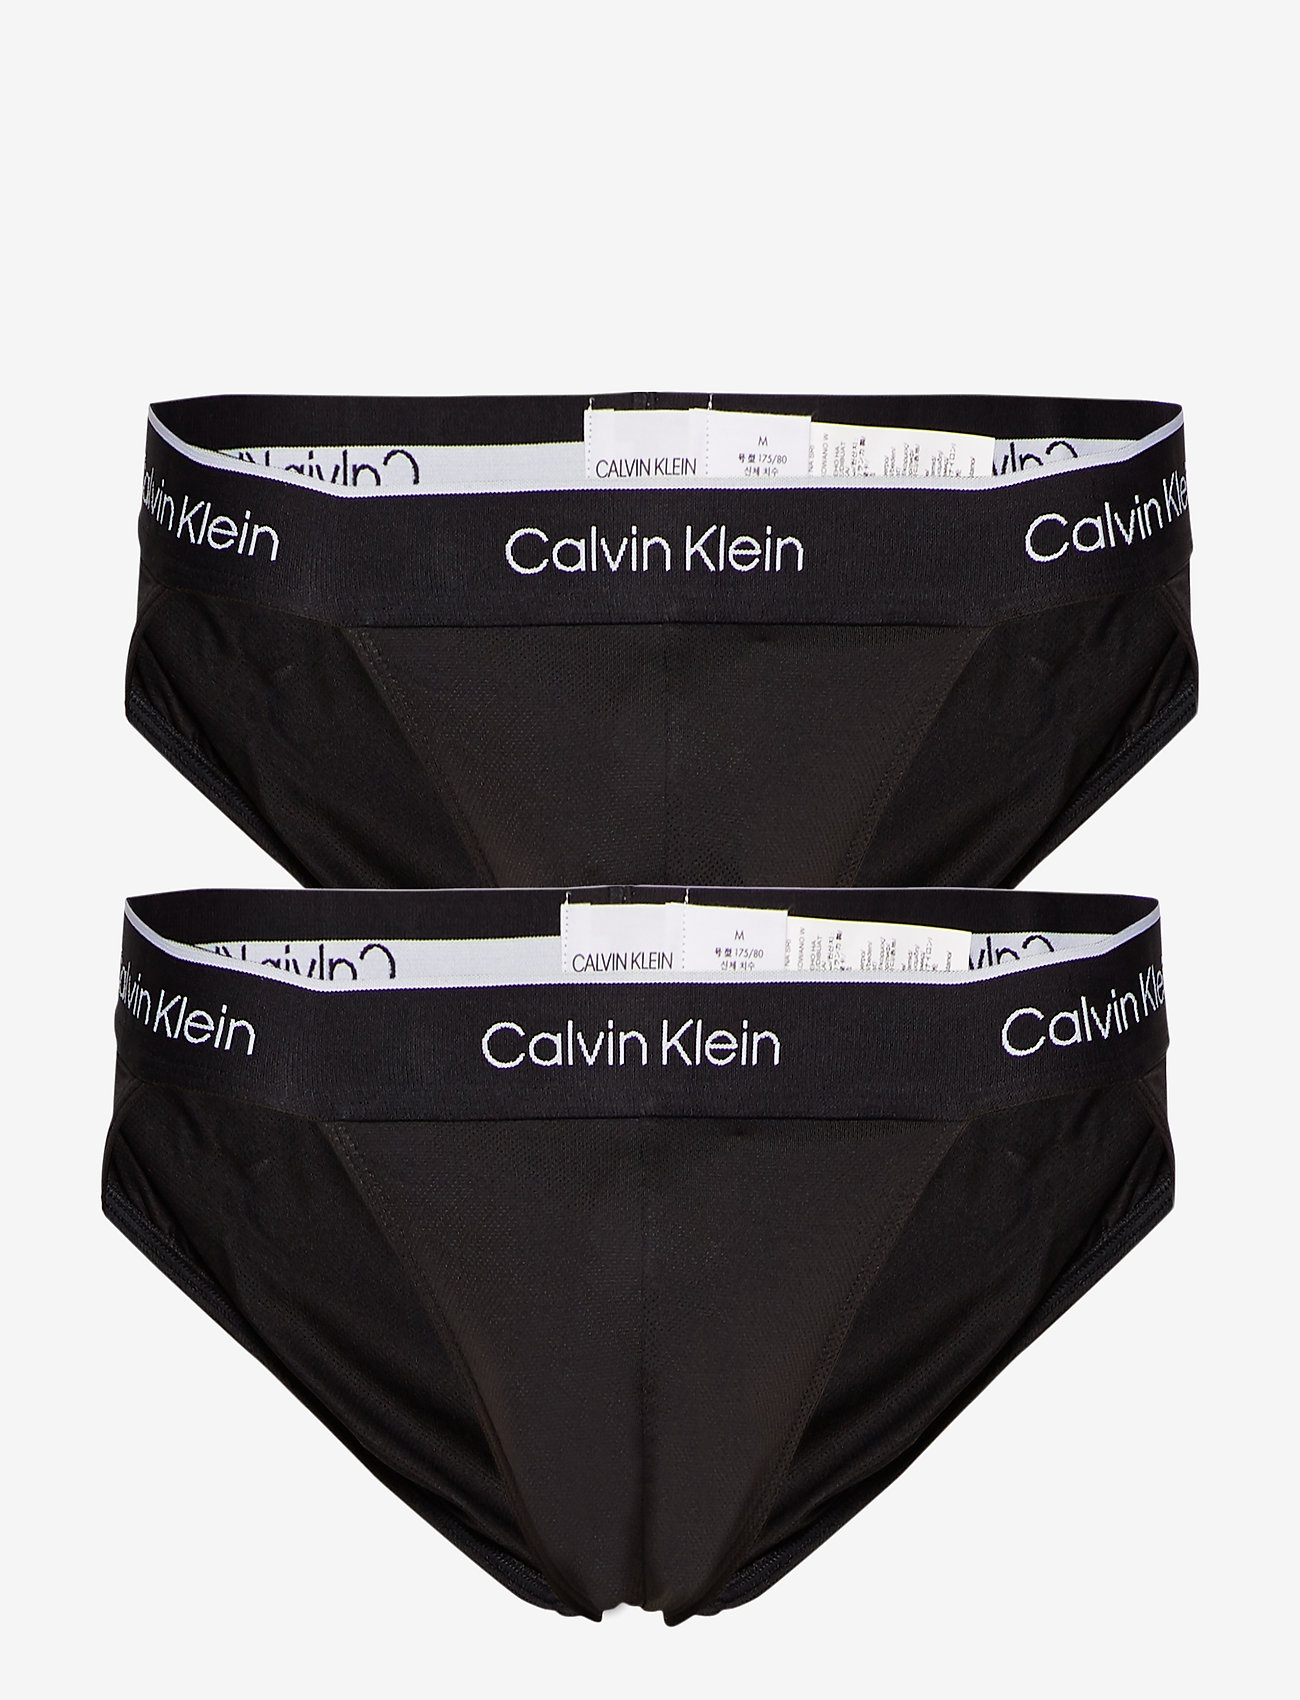 calvin klein sport underwear